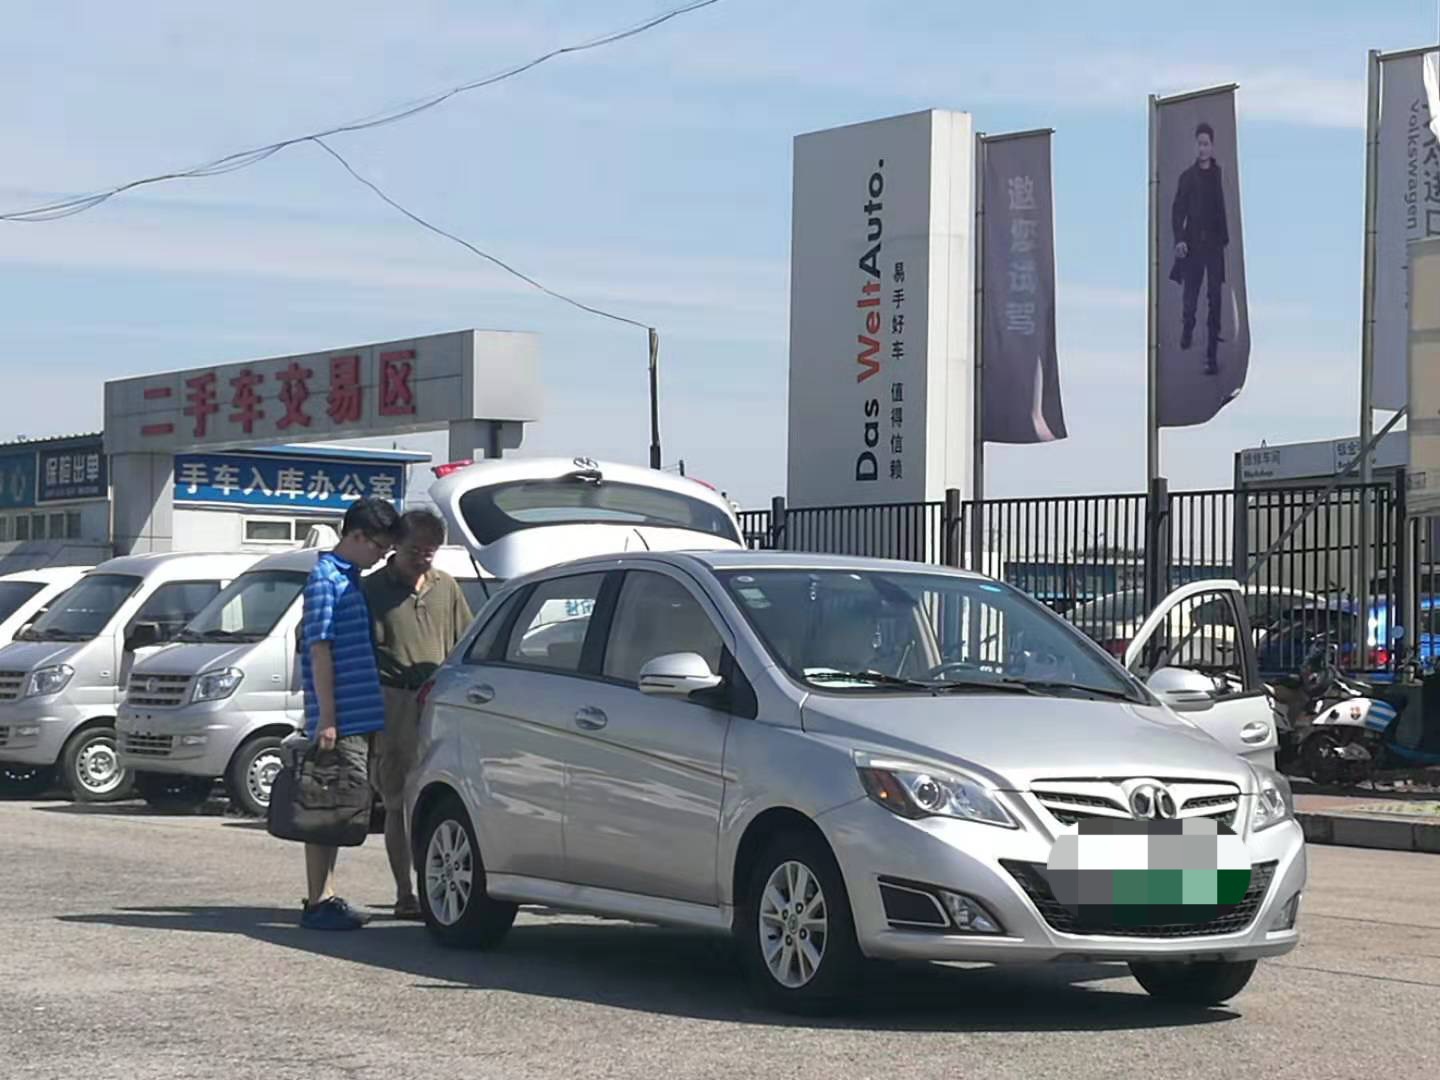 图为北辰亚运村汽车交易市场。新京报记者 张星摄